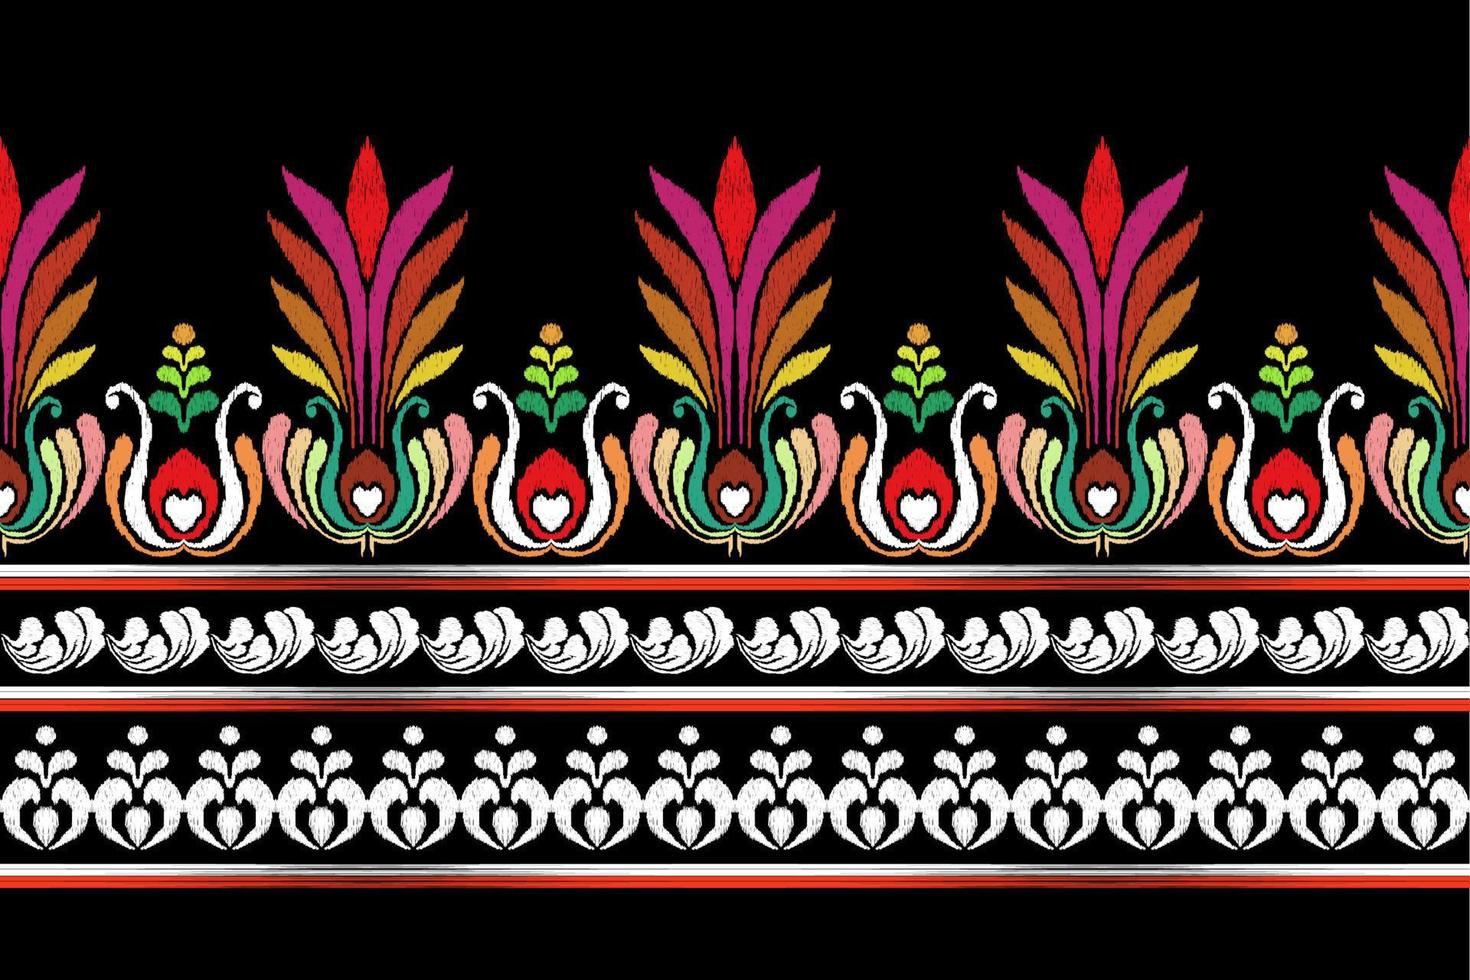 Patchwork Blumen- Muster mit Paisley und indisch Blume Motive. Damast Stil Muster zum Textil und Dekoration vektor